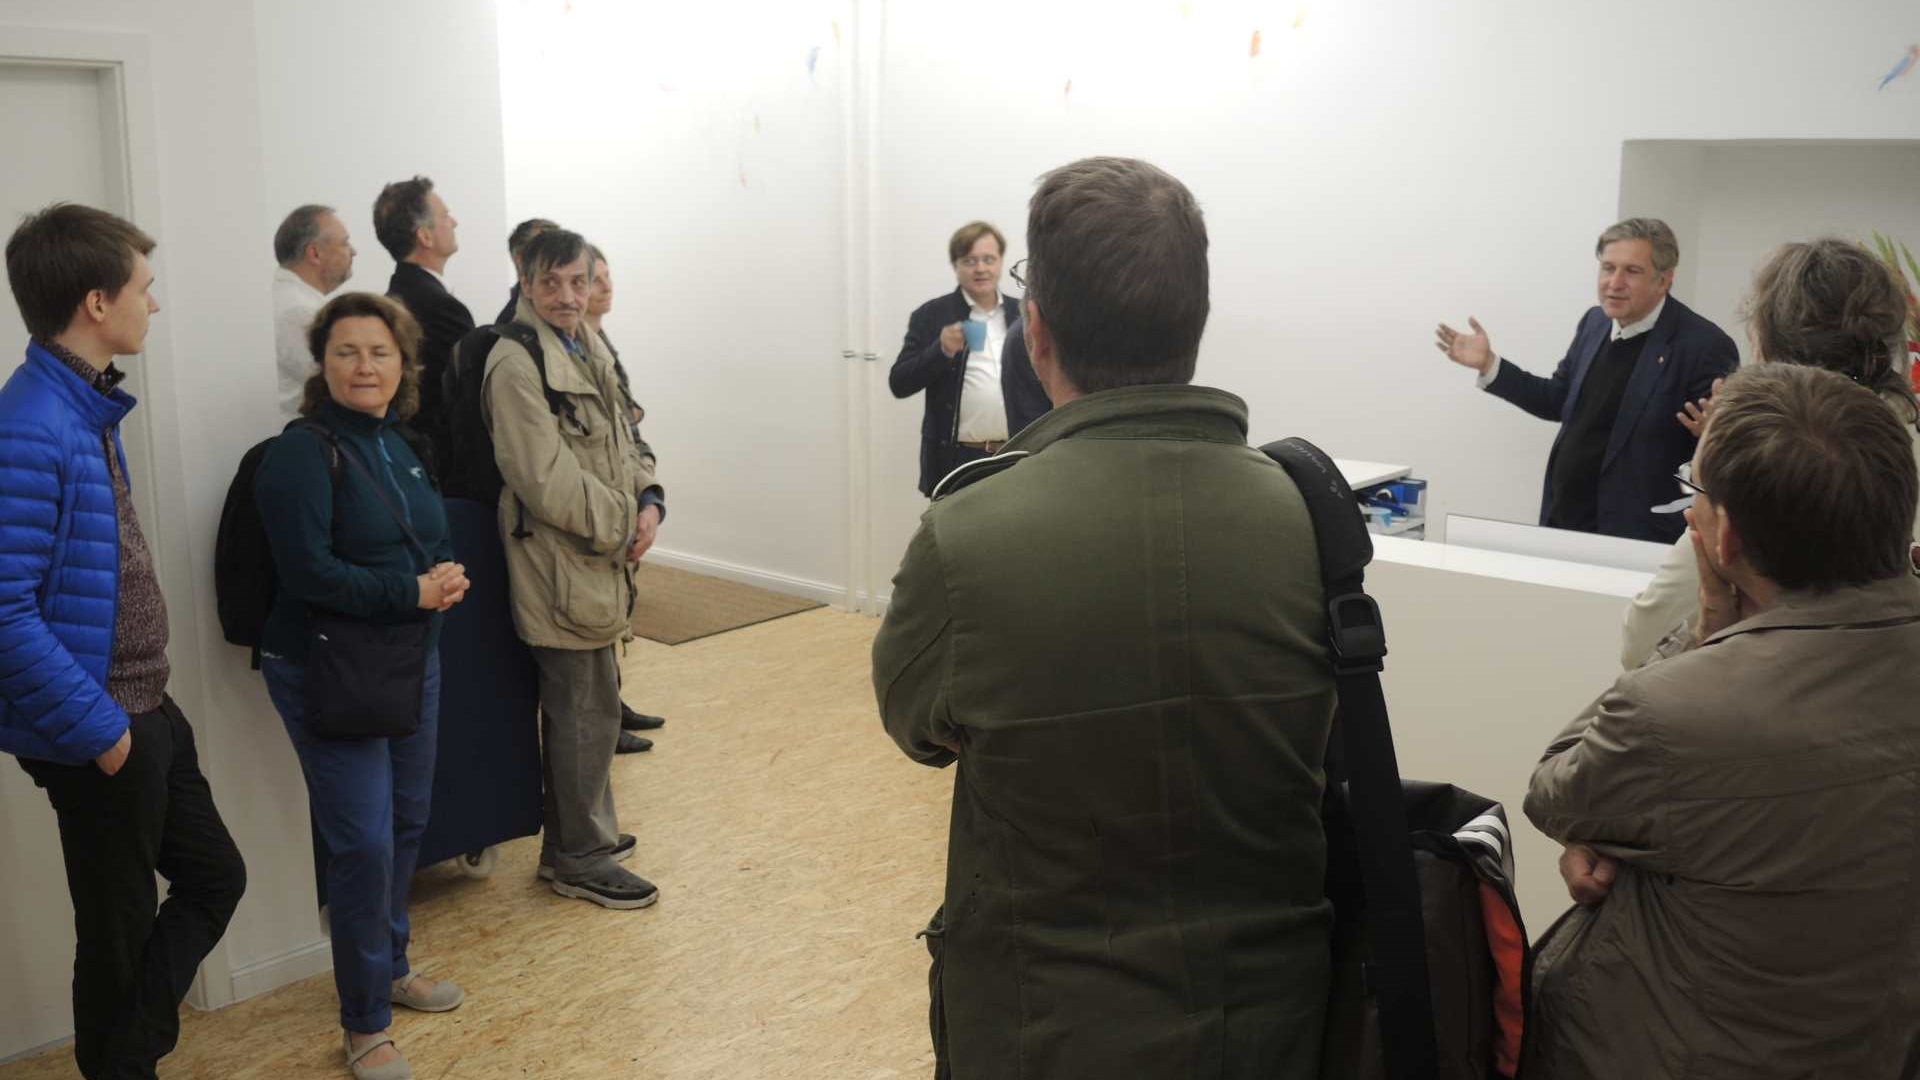 Michael Schiessl begrüßt die Gäste im Empfang der Eye Square GmbH (Foto: Norman Gebauer)